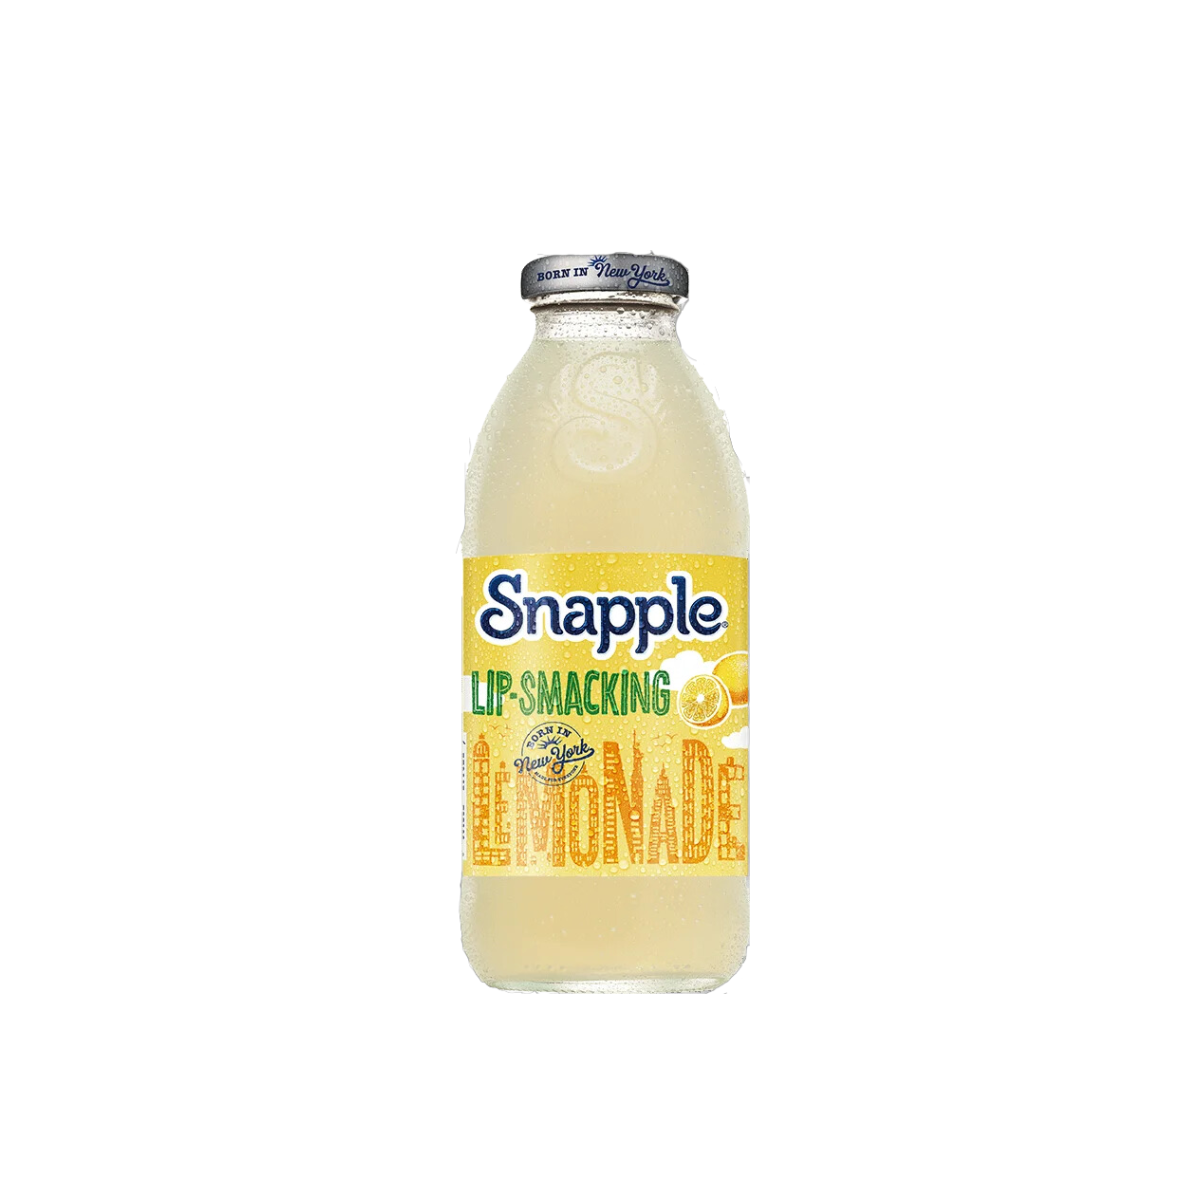 Snapple Lemonade